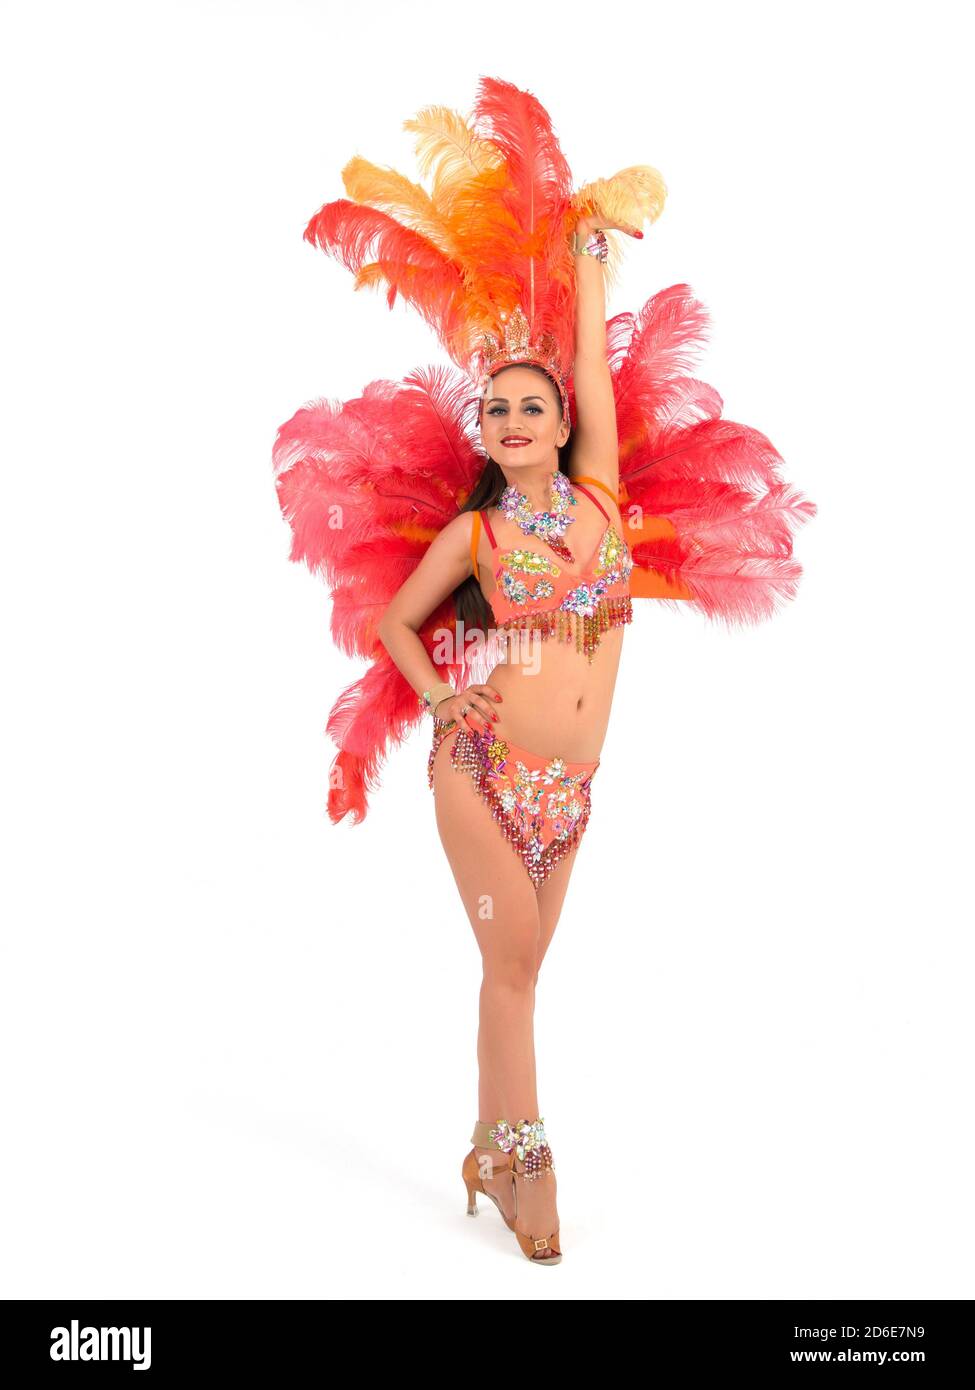 Danseuse de samba se posant dans un costume coloré Photo Stock - Alamy